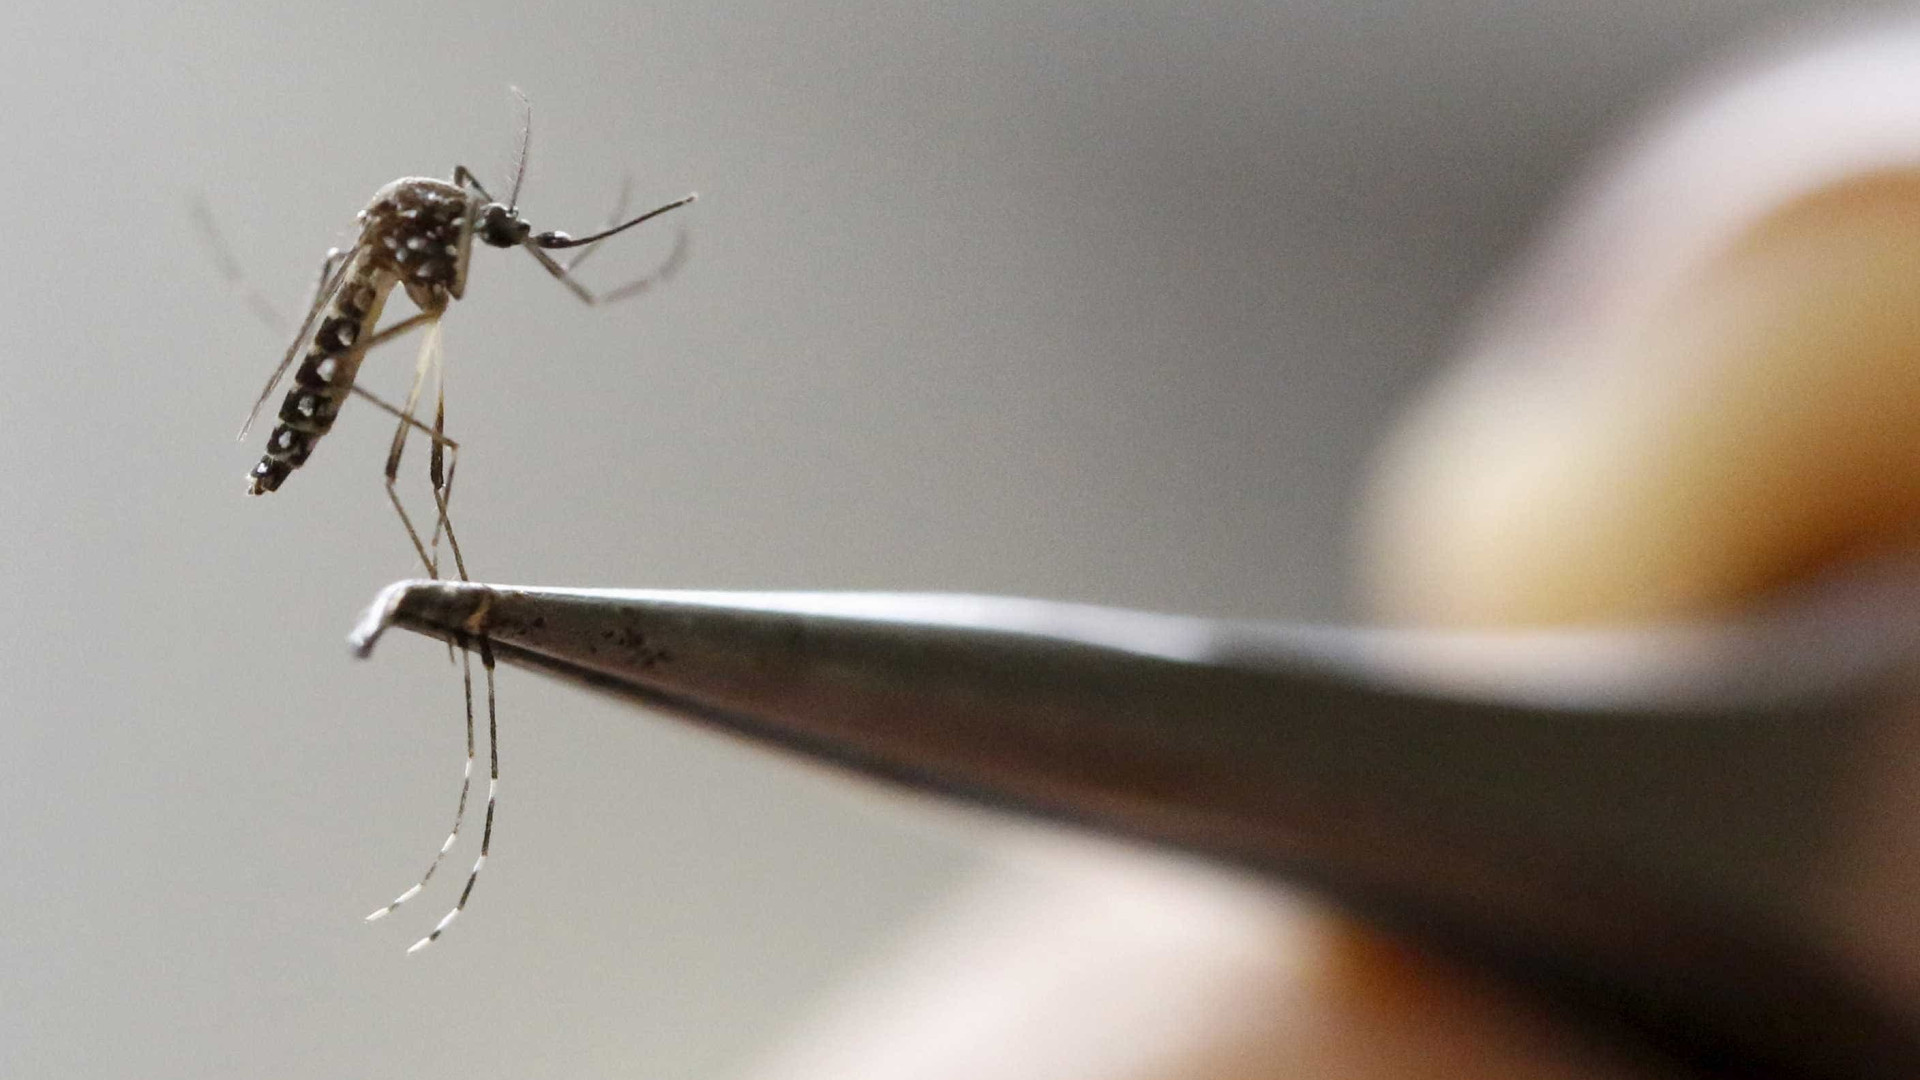 Teste de vacina contra zika mostra 
eficácia em camundongos